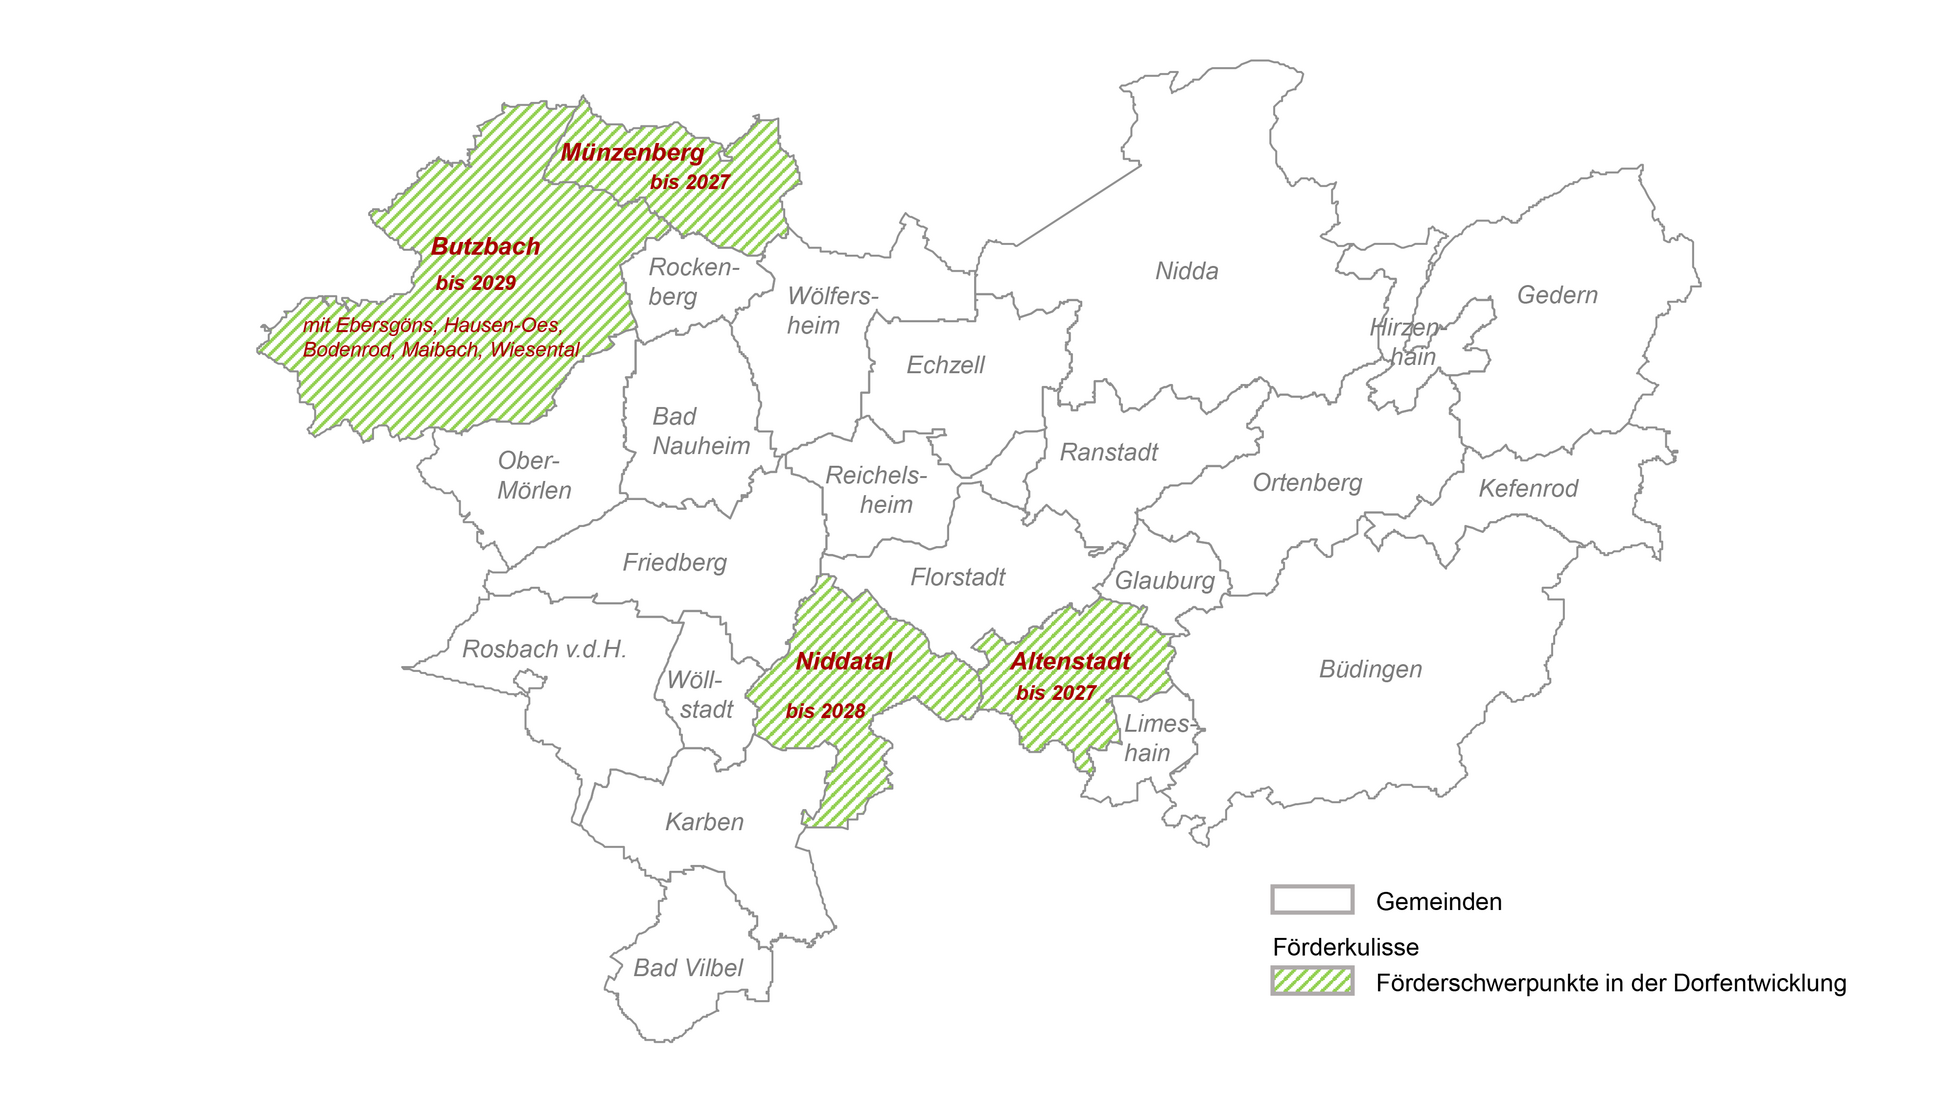 Karte des Wetteraukreises, eingezeichnet sind die Förderschwerpunkte Altenstadt, Butzbach, Münzenberg, Niddatal